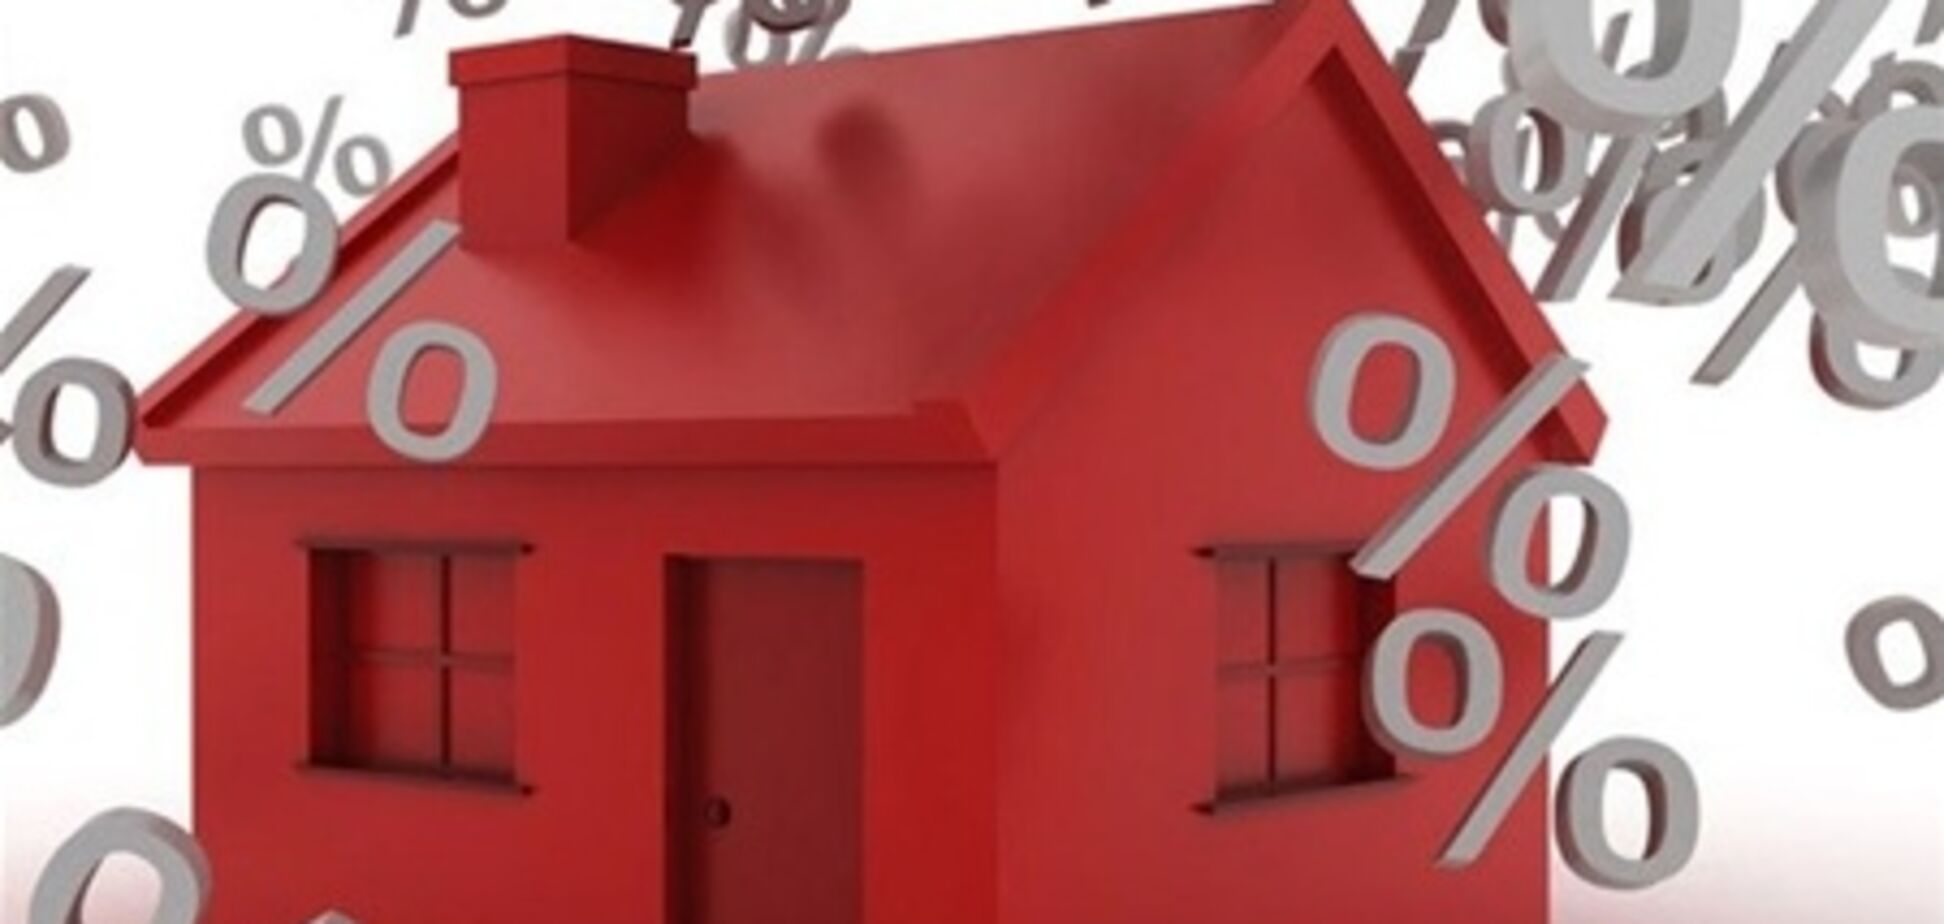 Для льготной ипотеки сумму первого взноса снизят до 10%